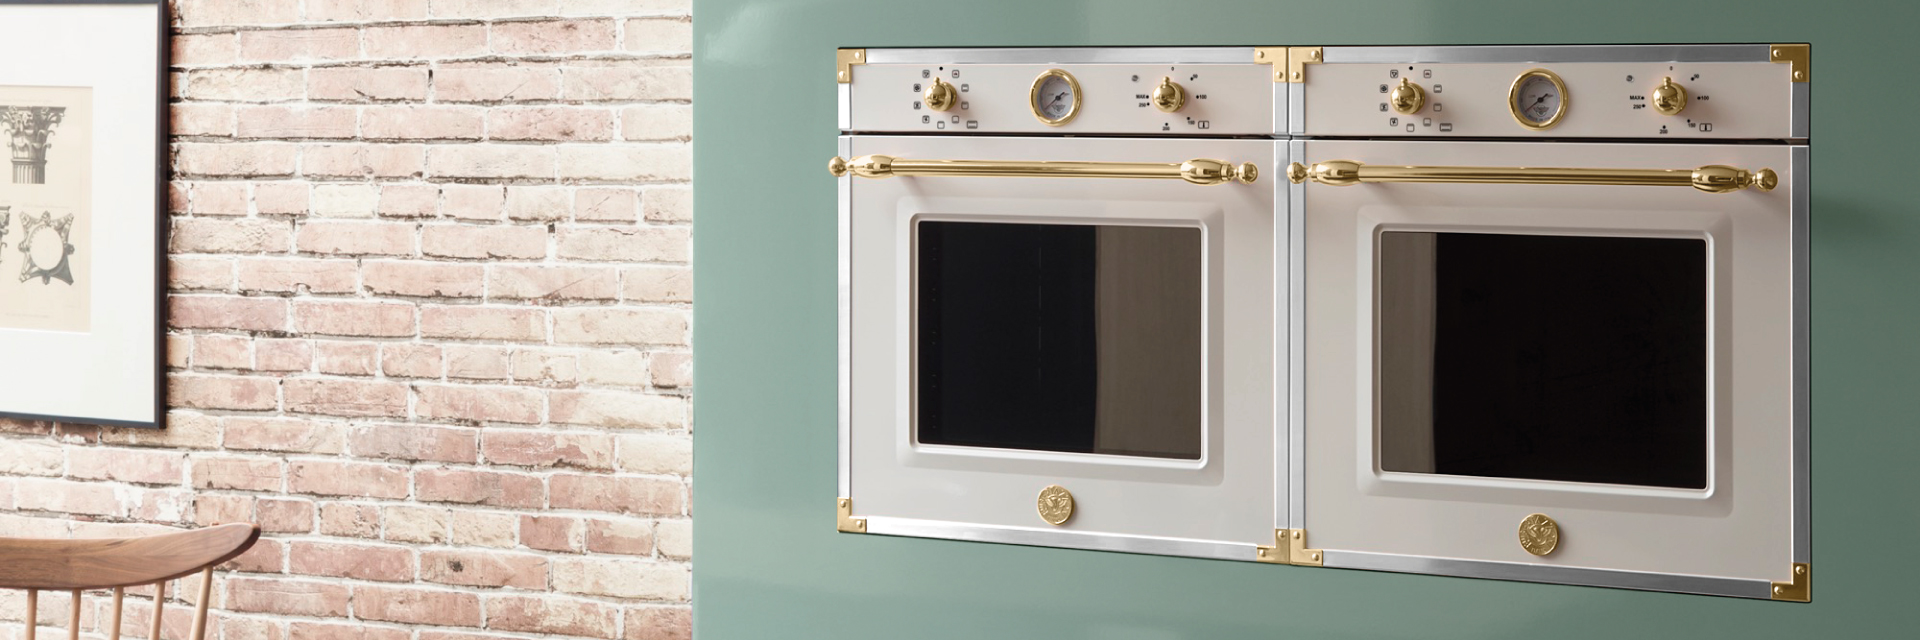 Scopri il forno della Serie Heritage 60 cm, ora nella nuova esclusiva finitura Oro! - Bertazzoni